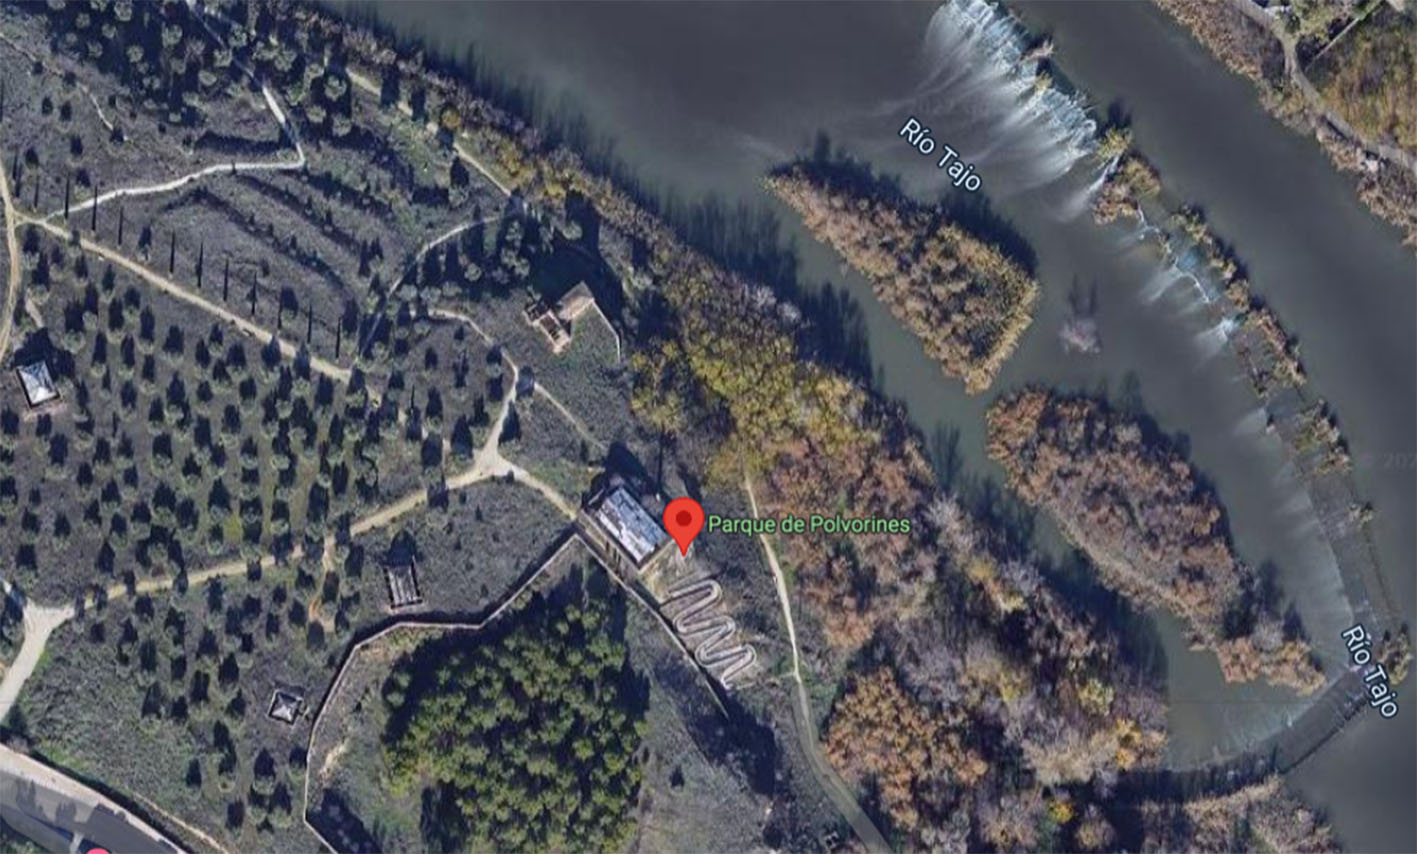 Vista aérea del parque de Polvorines, al lado del Tajo y cerca de la avenida de la Cava, en Toledo.